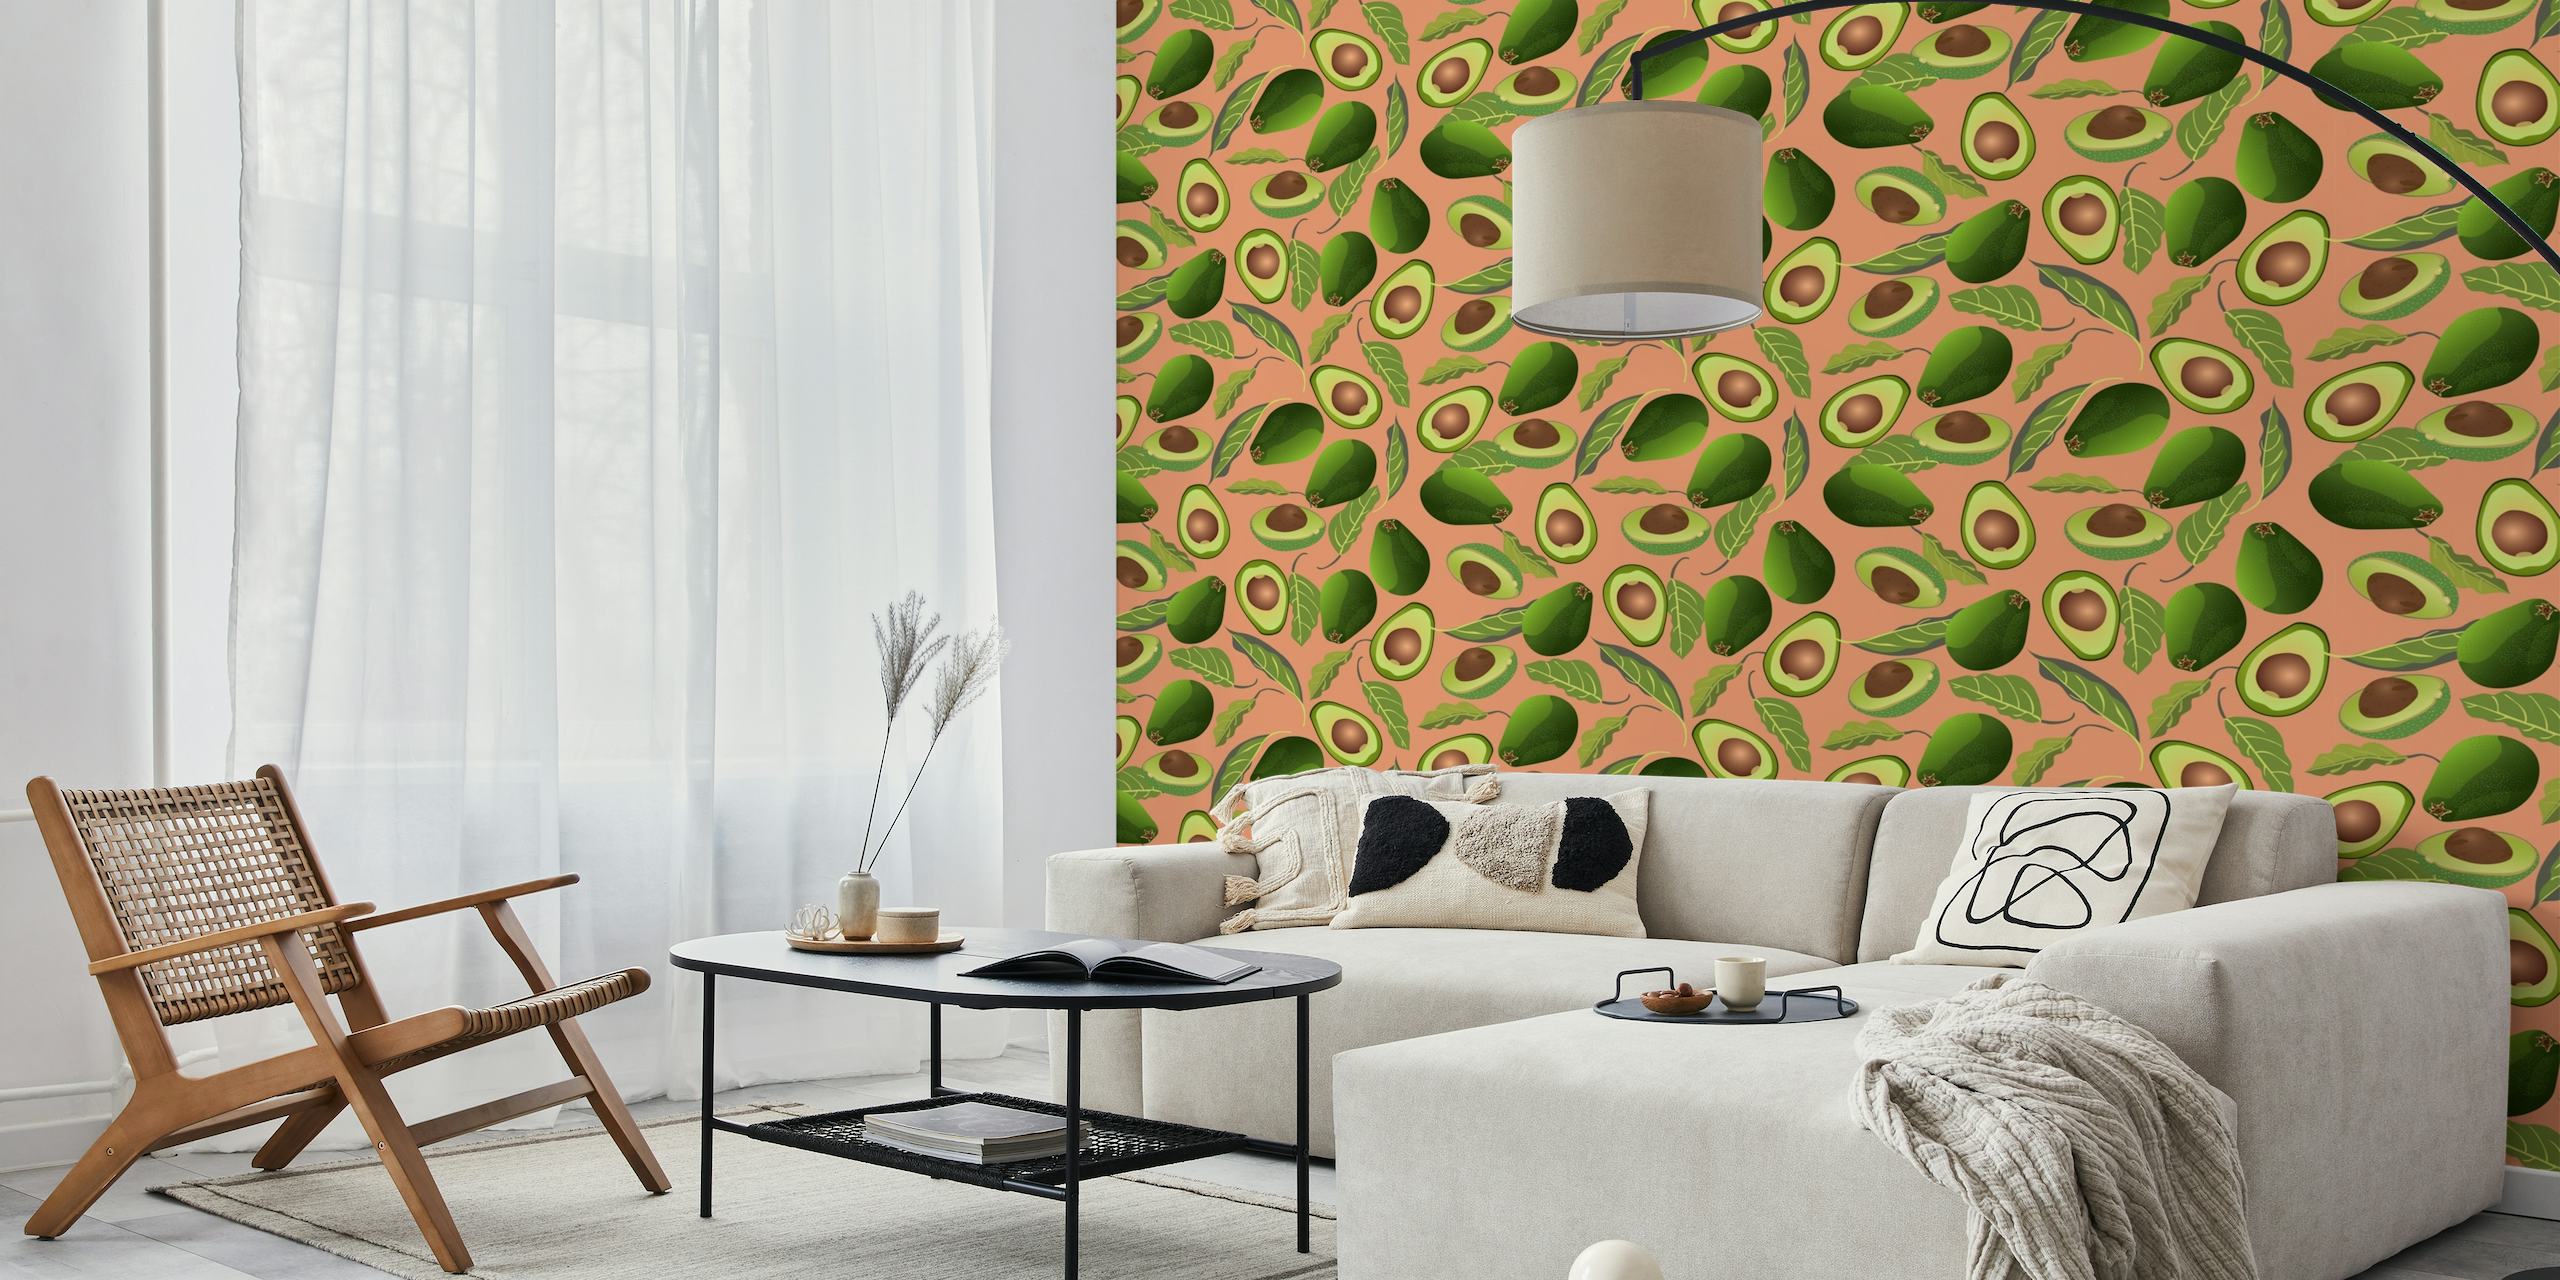 Avocado wallpaper